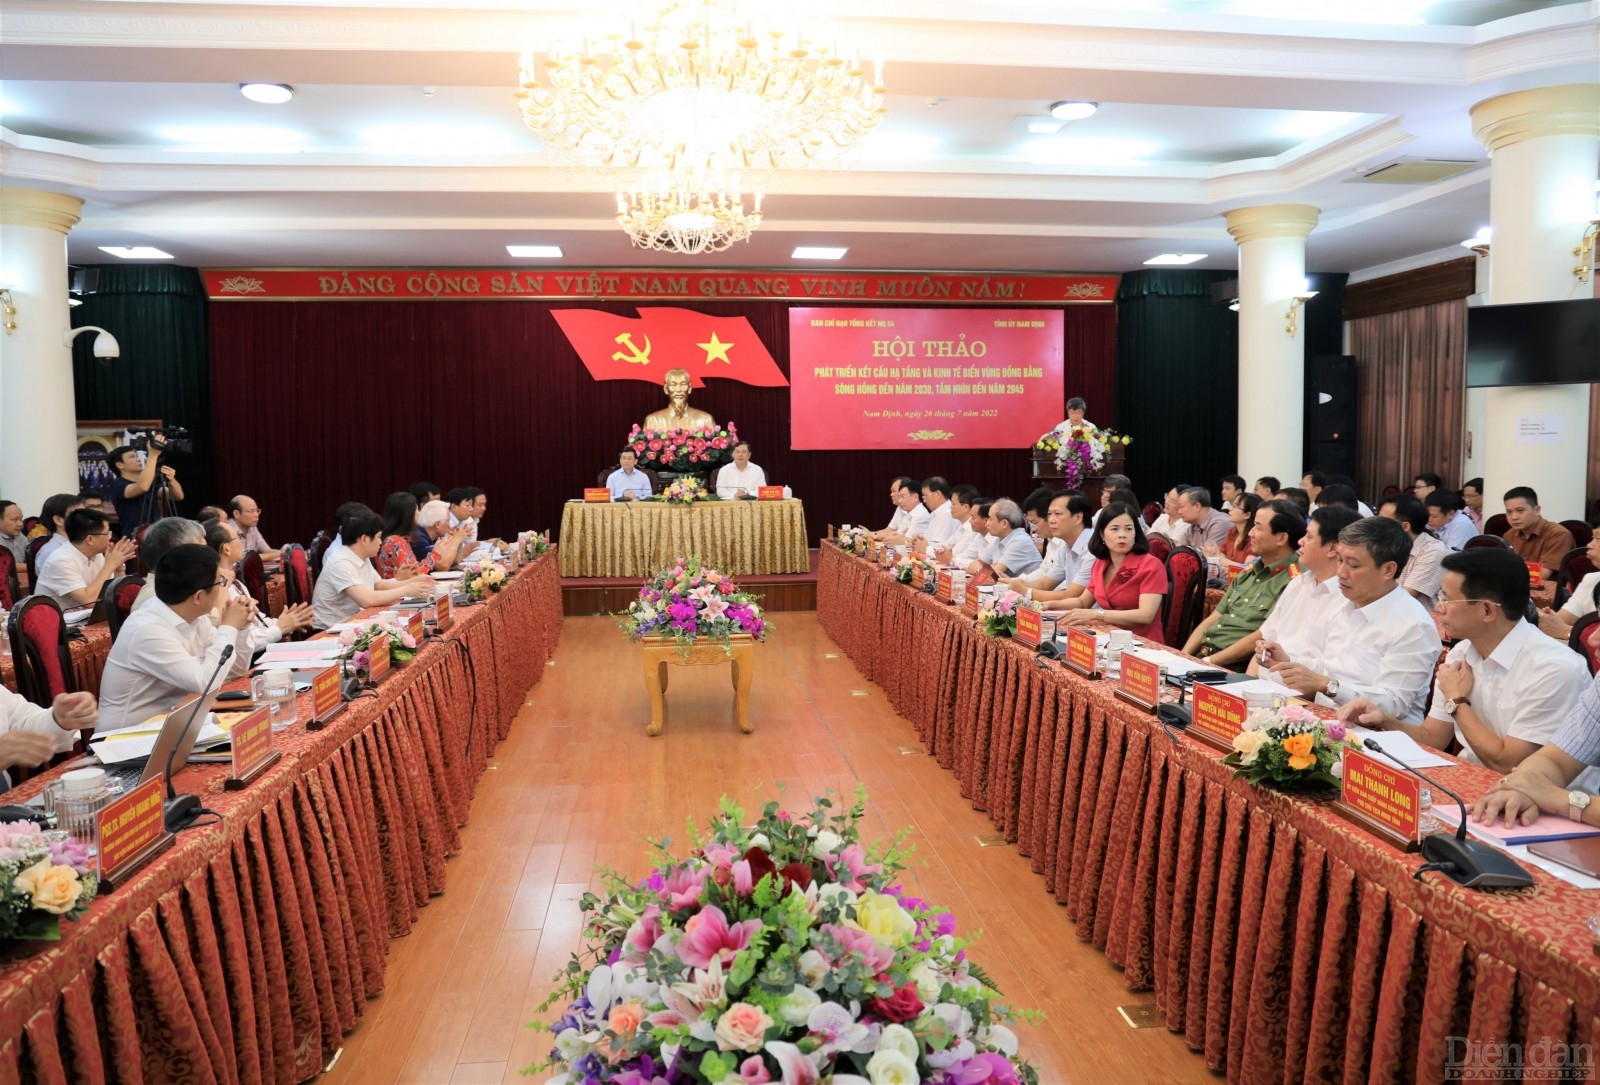 Hội thảo “Phát triển kết cấu hạ tầng và kinh tế biển vùng đồng bằng sông Hồng đến năm 2030, tầm nhìn đến năm 2045” tại Nam Định.